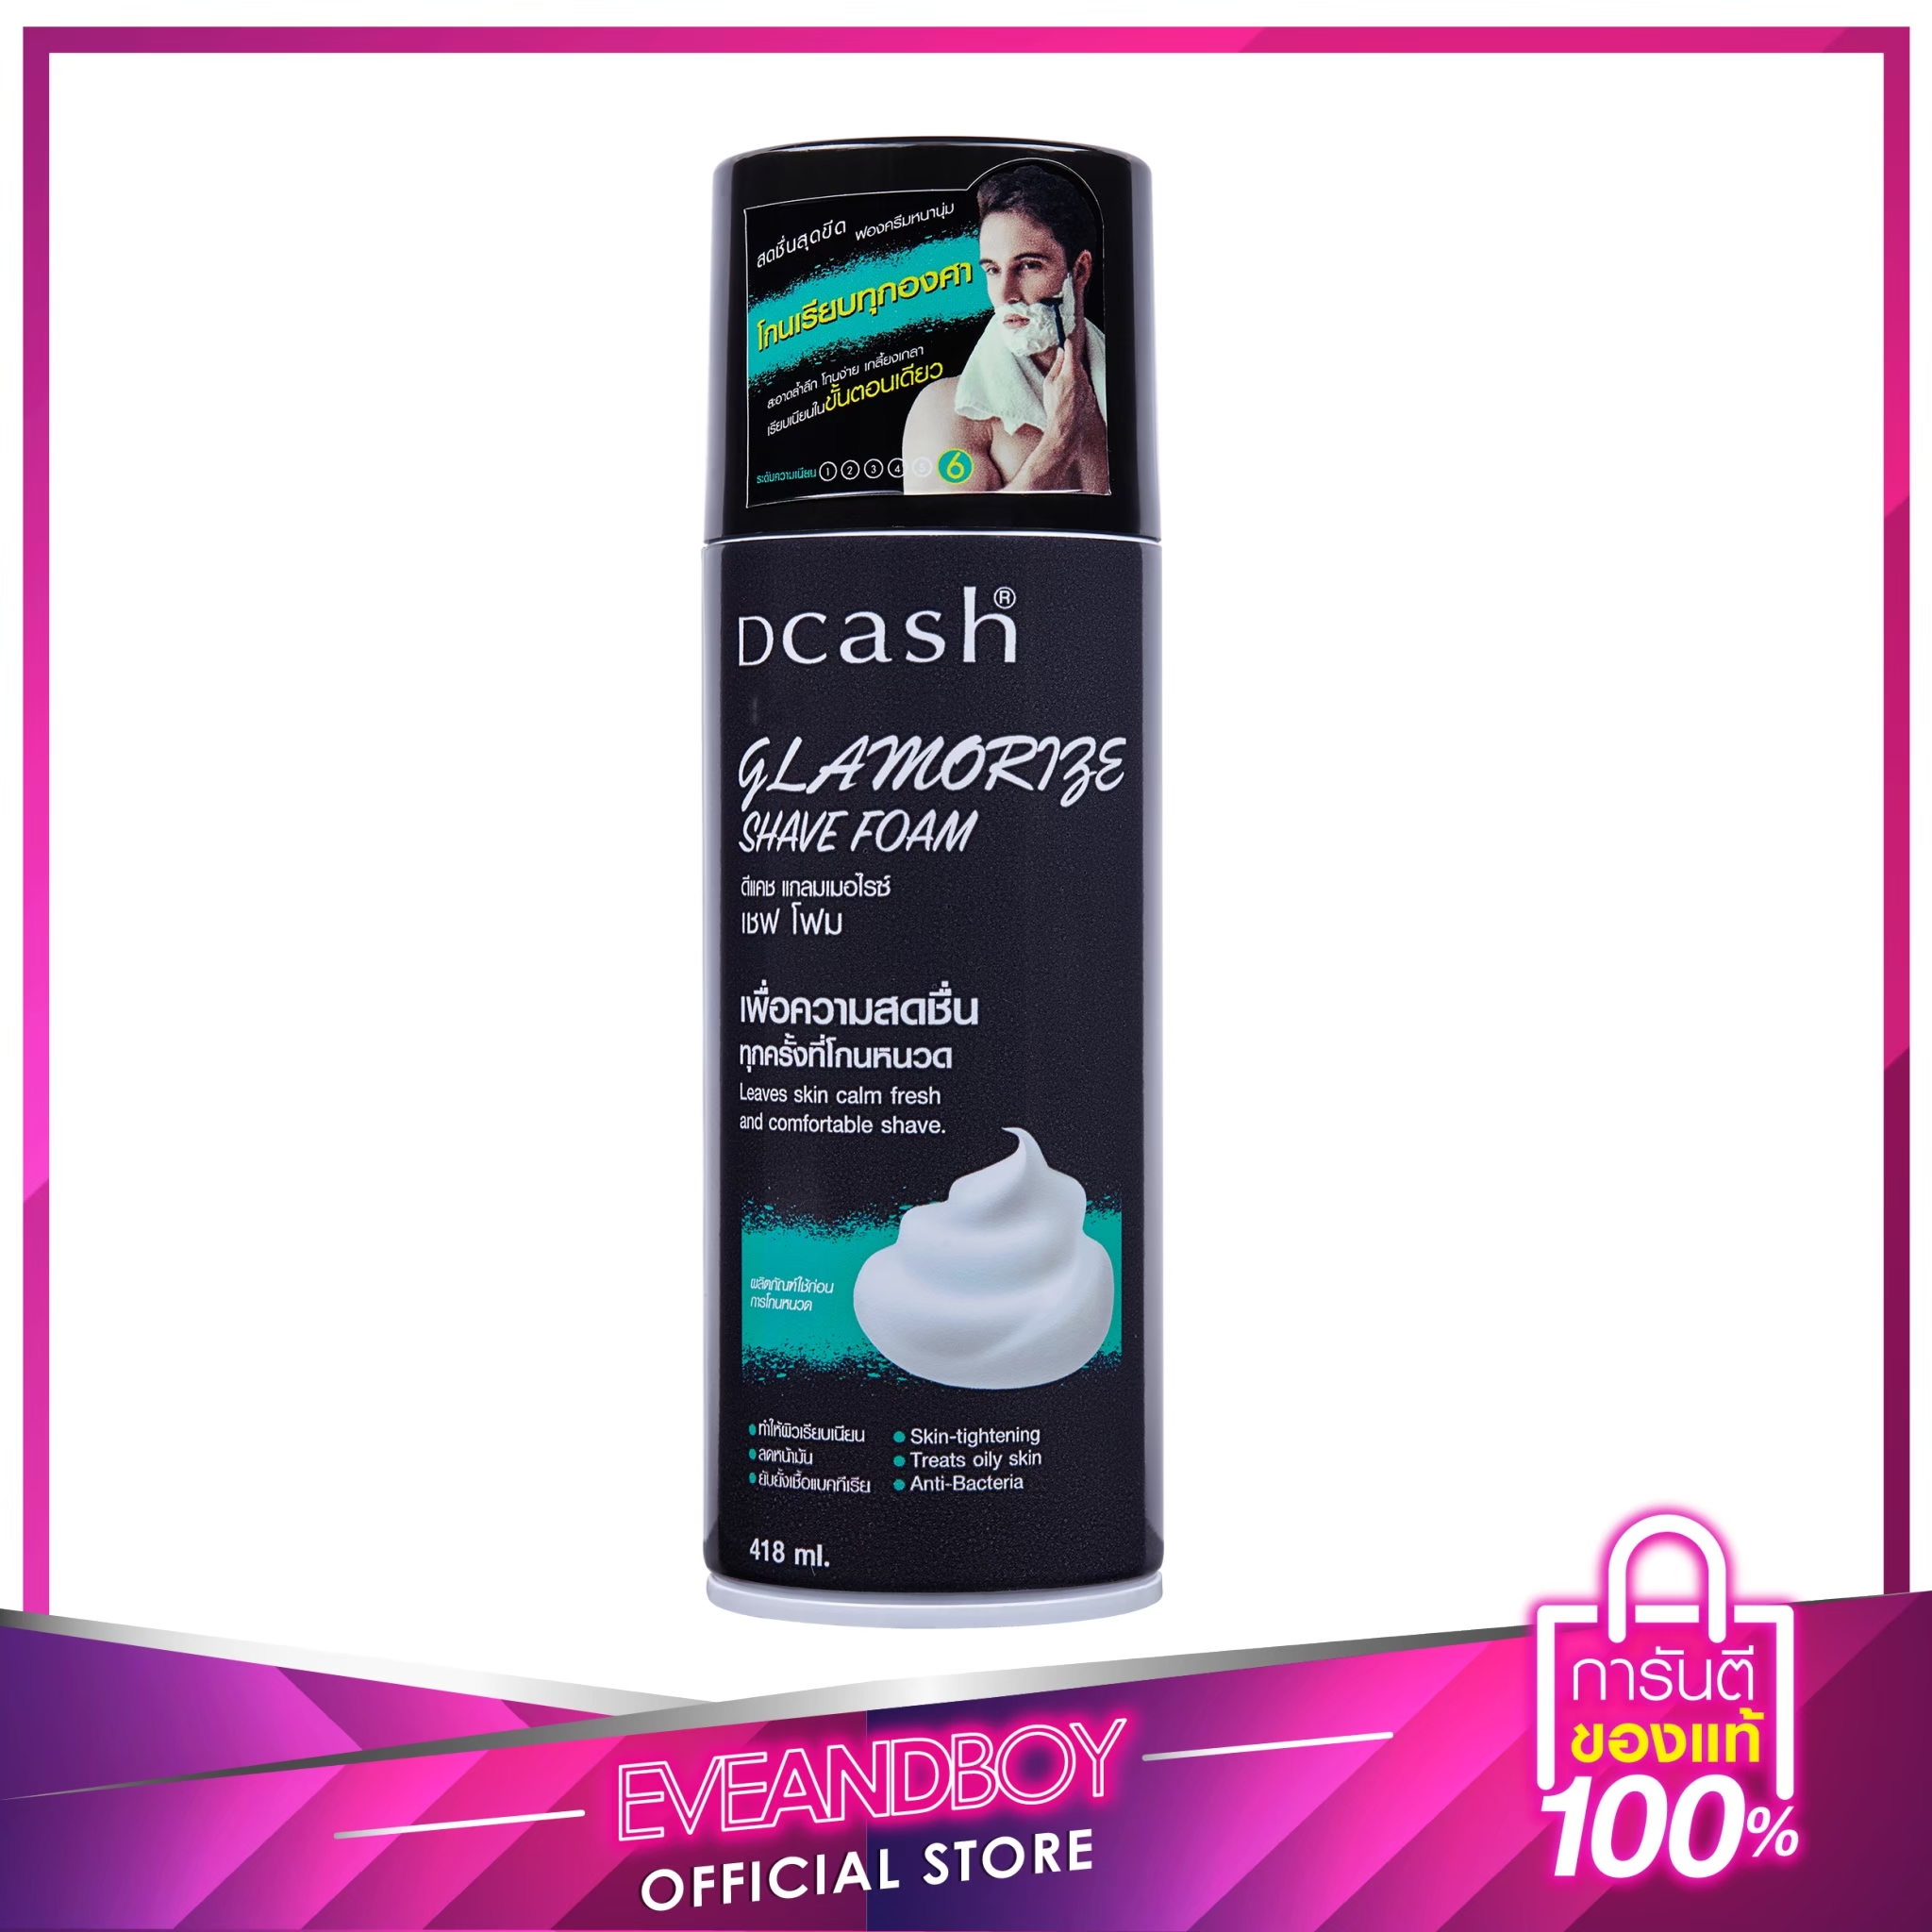 DCASH - Glamorize Shave Foam 418 g.